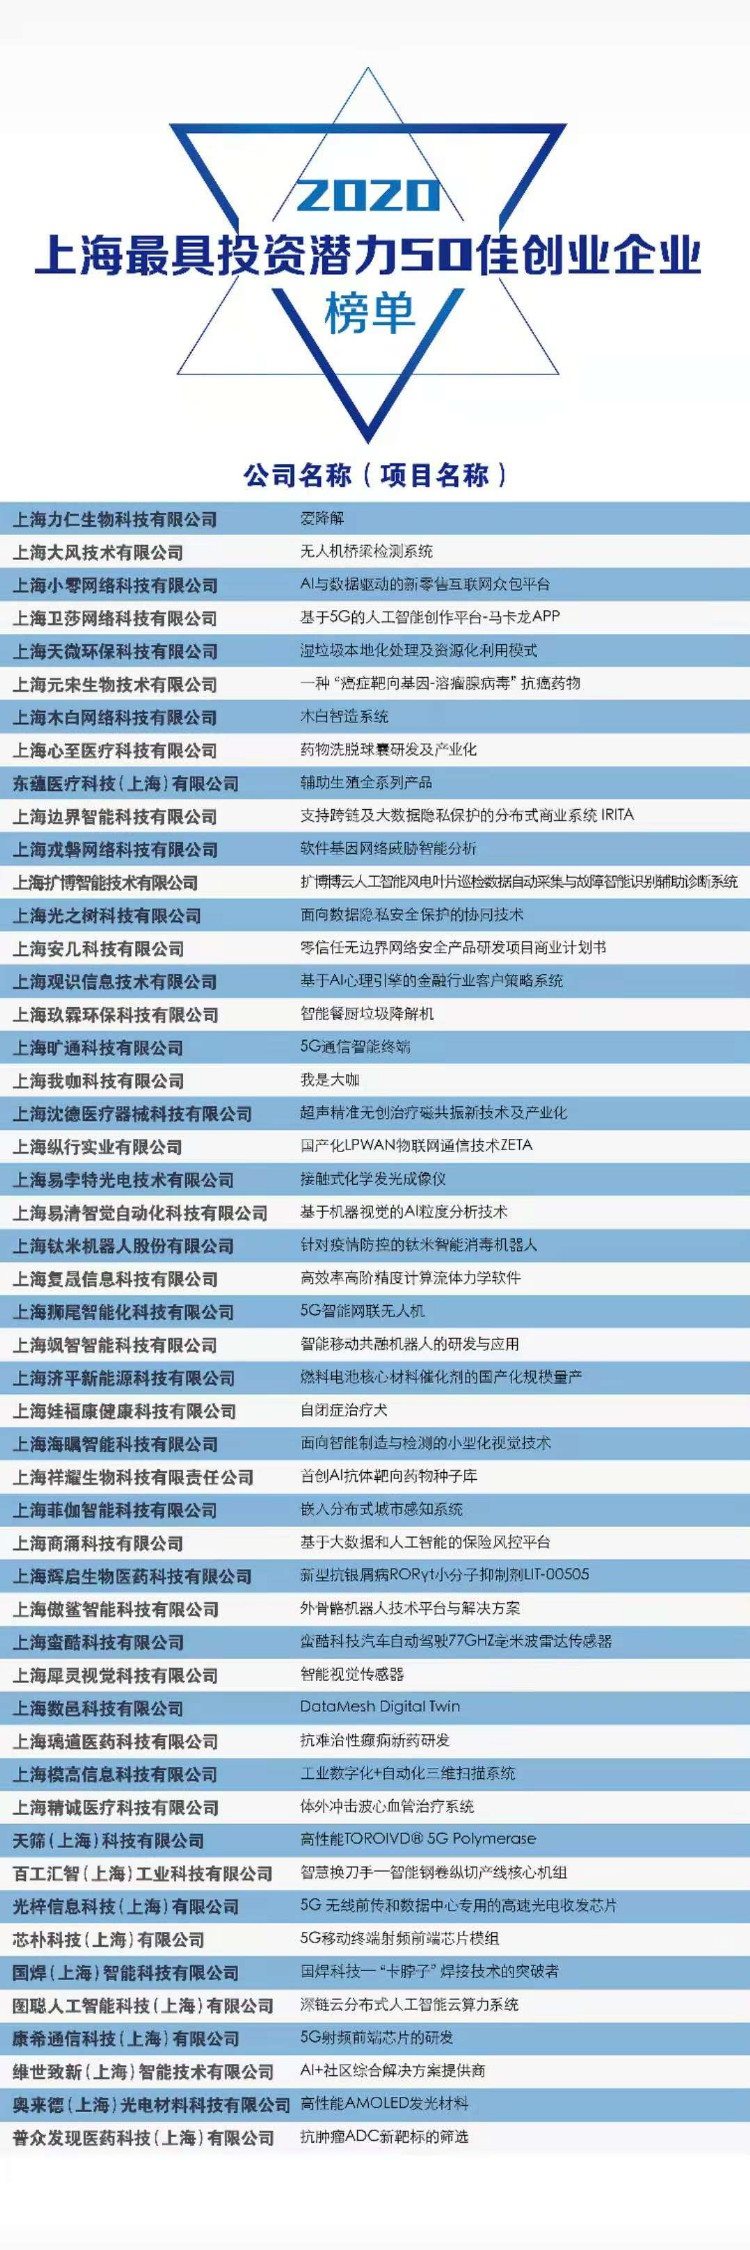 榜单揭晓！这些创业企业入围2020年“上海最具投资潜力50佳”